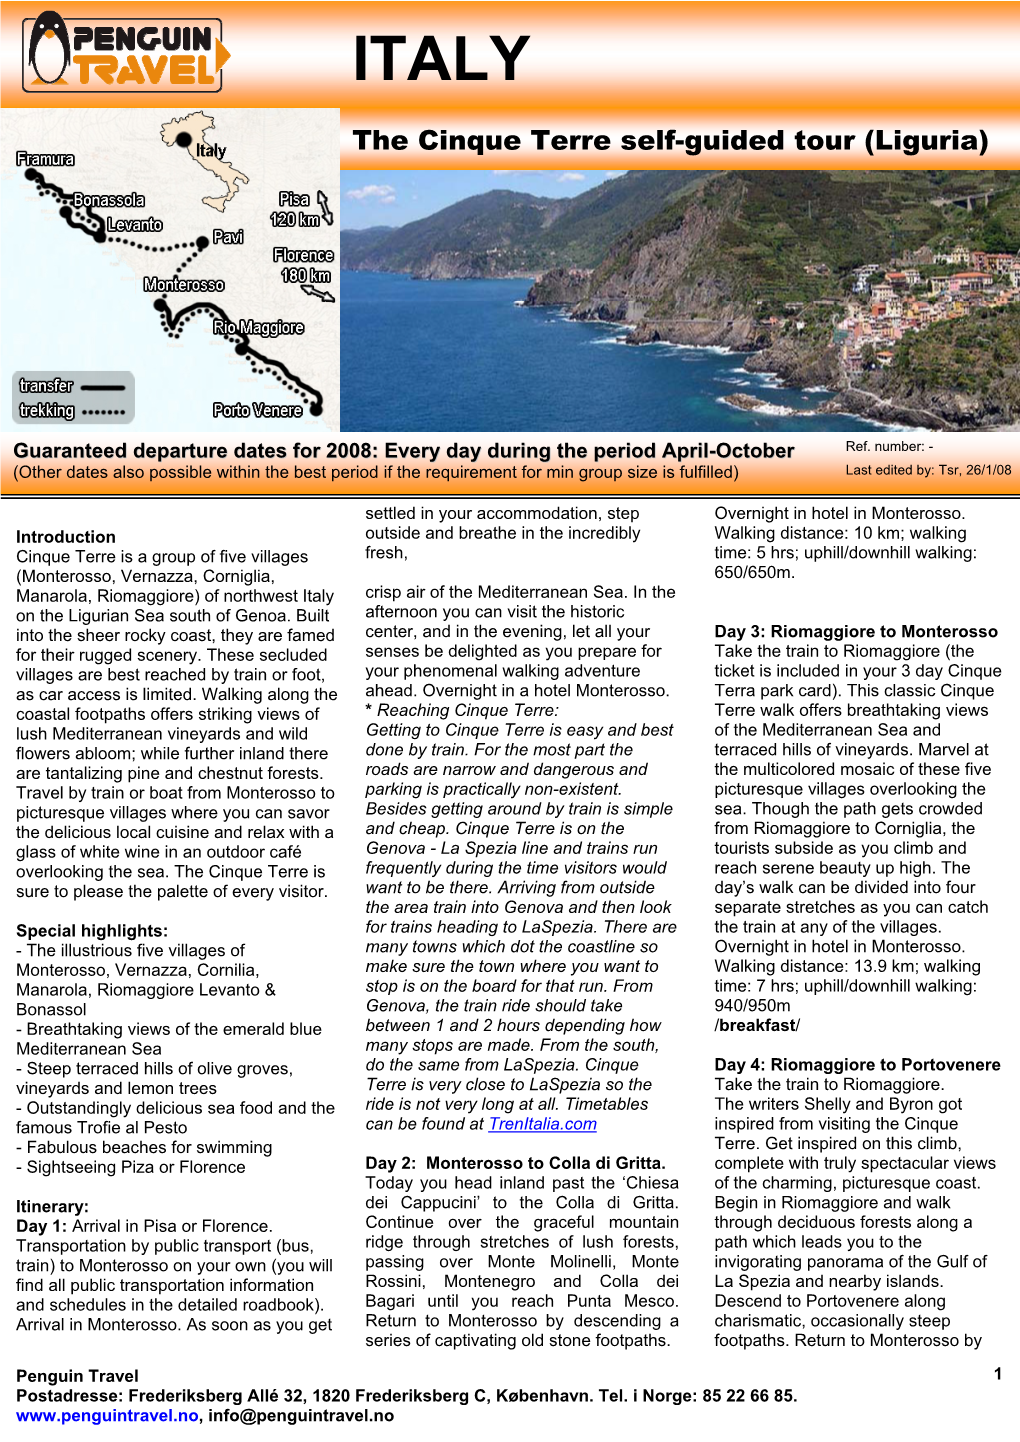 The Cinque Terre Self-Guided Tour (Liguria)